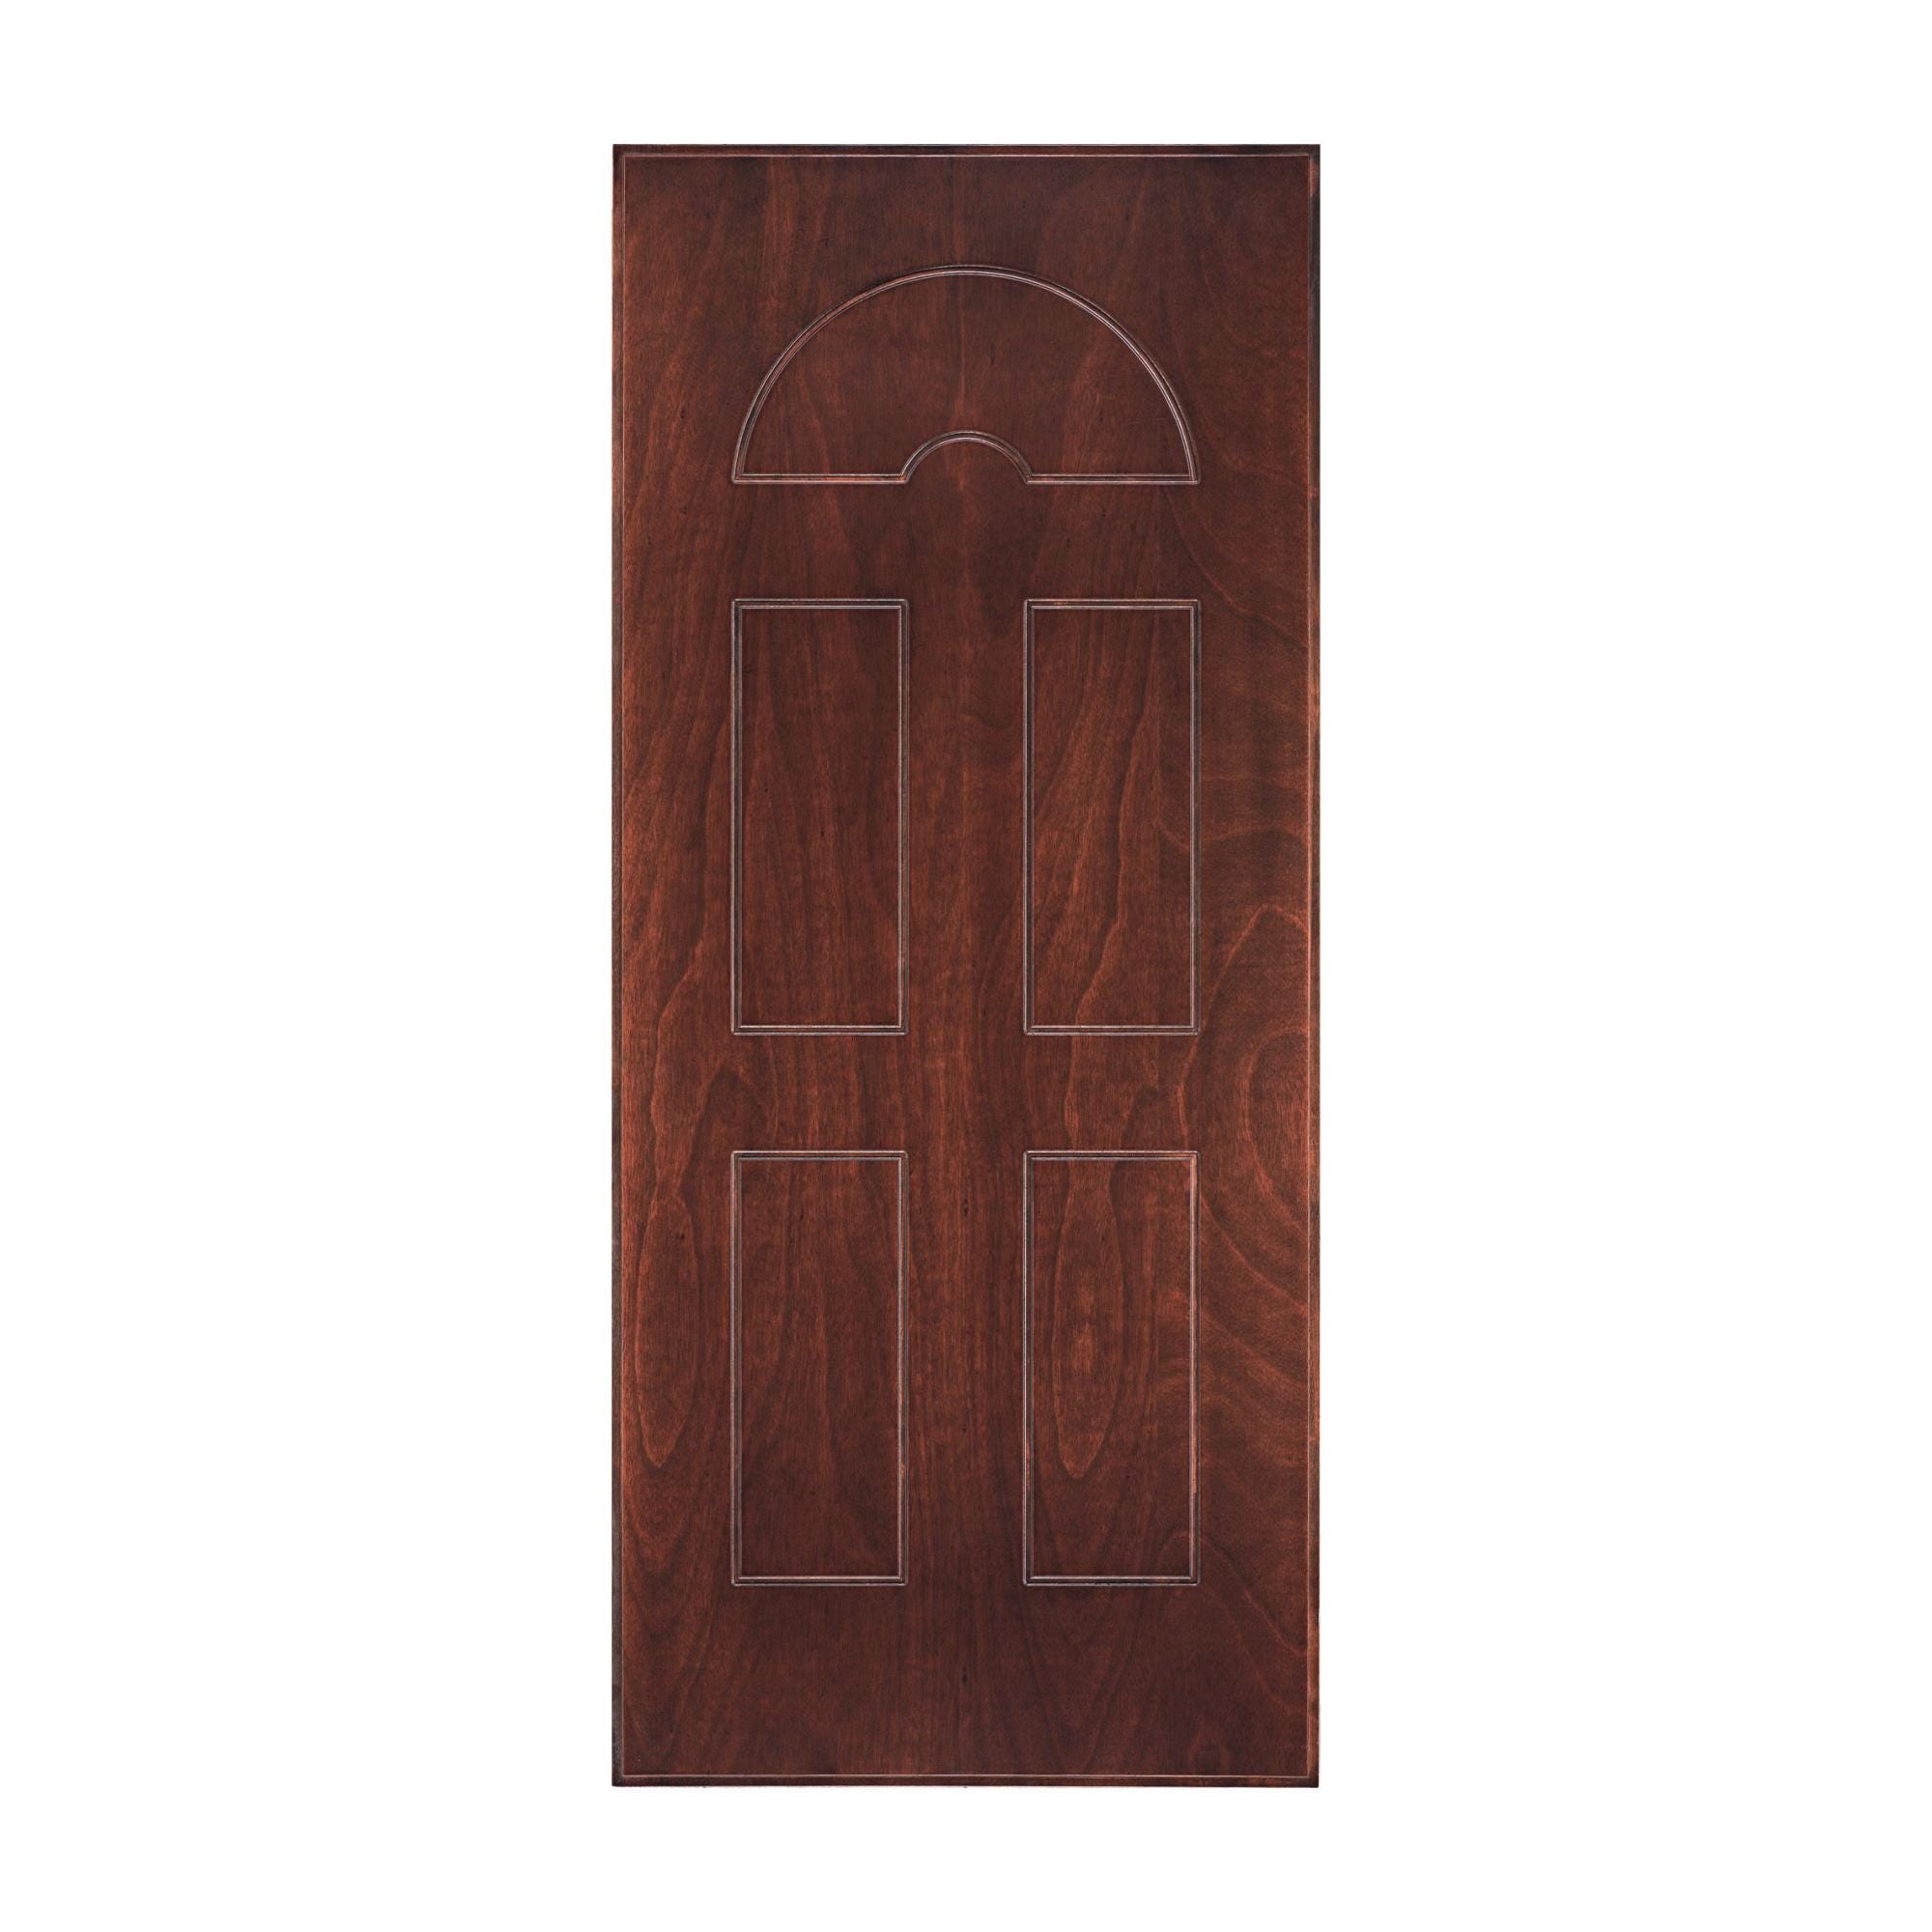 Pannello per porta blindata Okoumè impiallacciato legno prodotto senza  rivestimento noce L 80 x H 210 cm, Sp 8 mm